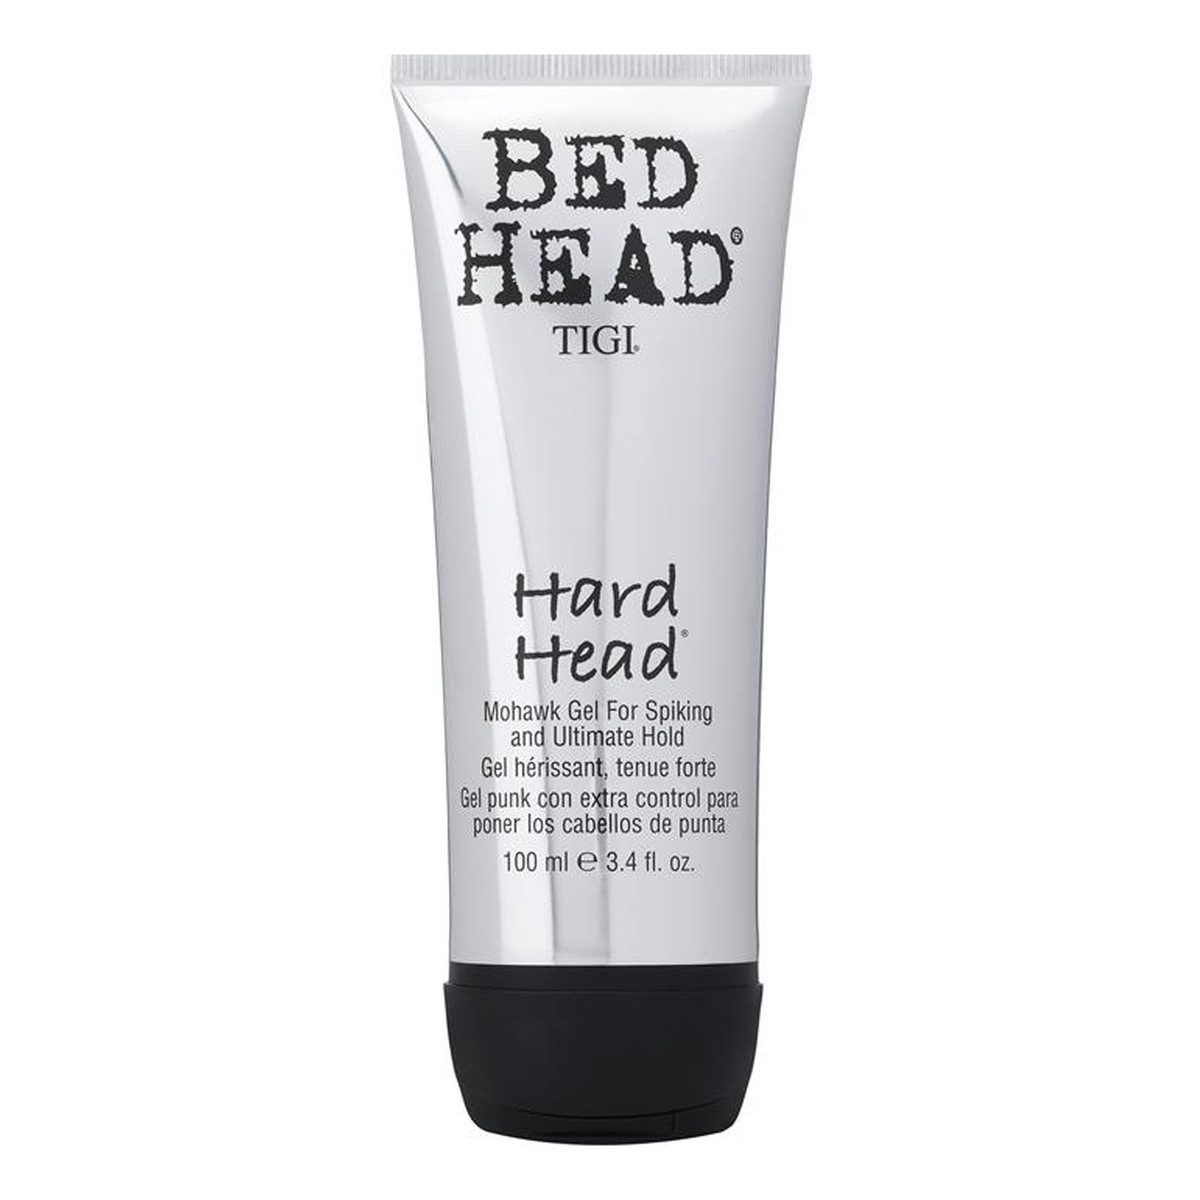 Tigi Bed Head Hard Head Mohawk Gel supermocny żel do stylizacji włosów 100ml